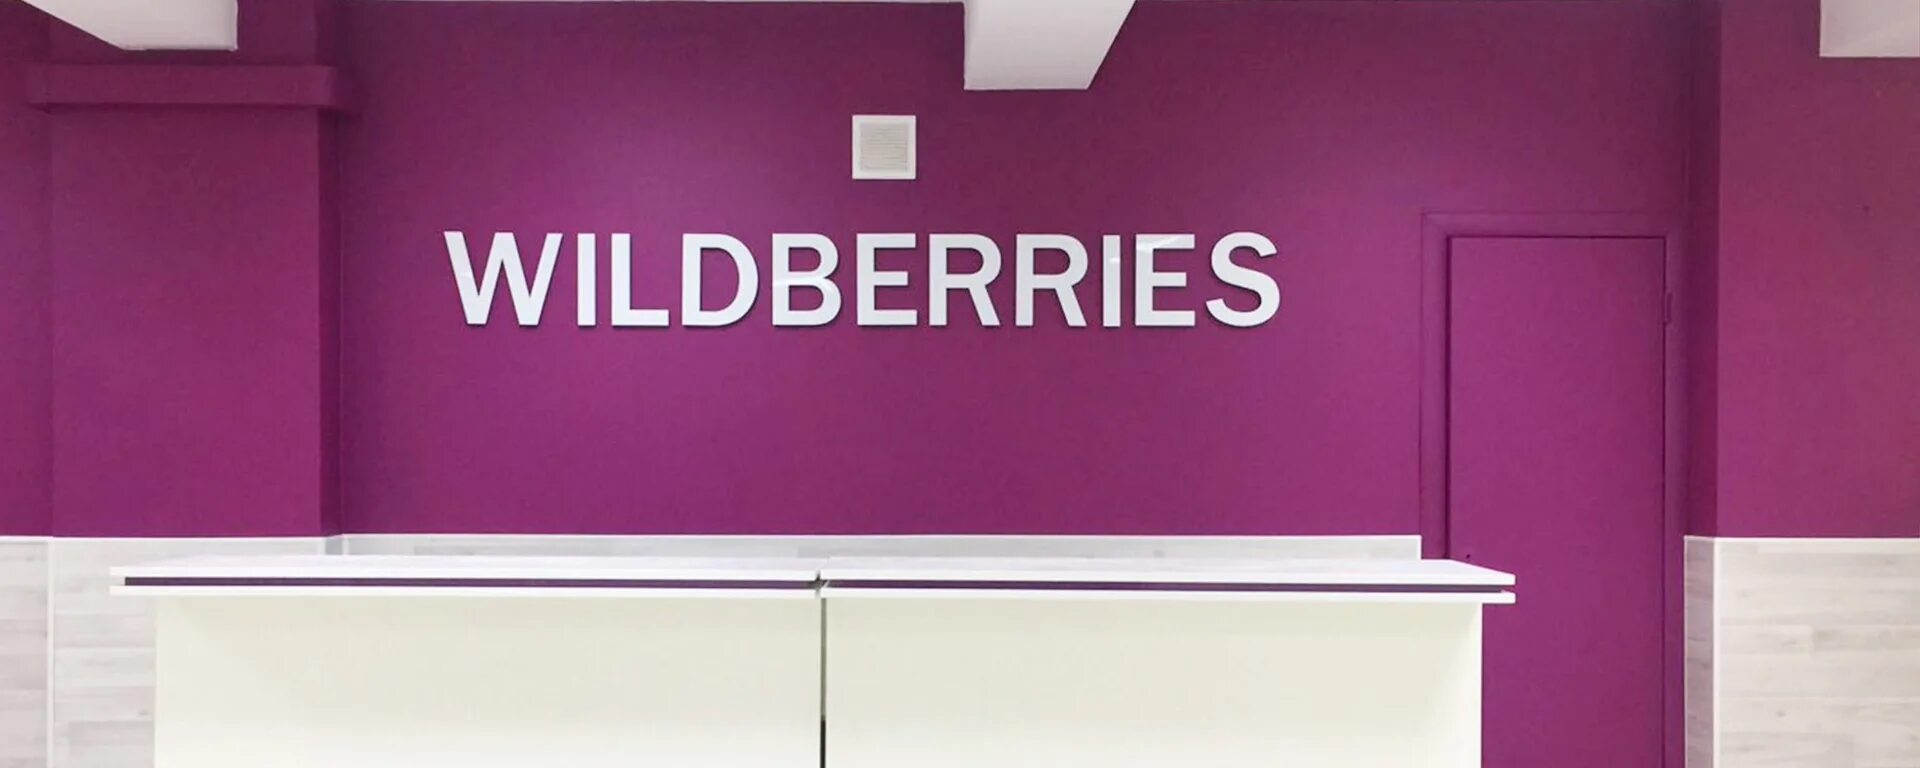 Https suppliers wildberries ru. Вайлдберриз. ПВЗ Wildberries. Wildberries интернет магазин. Wildberries вайлдберриз.